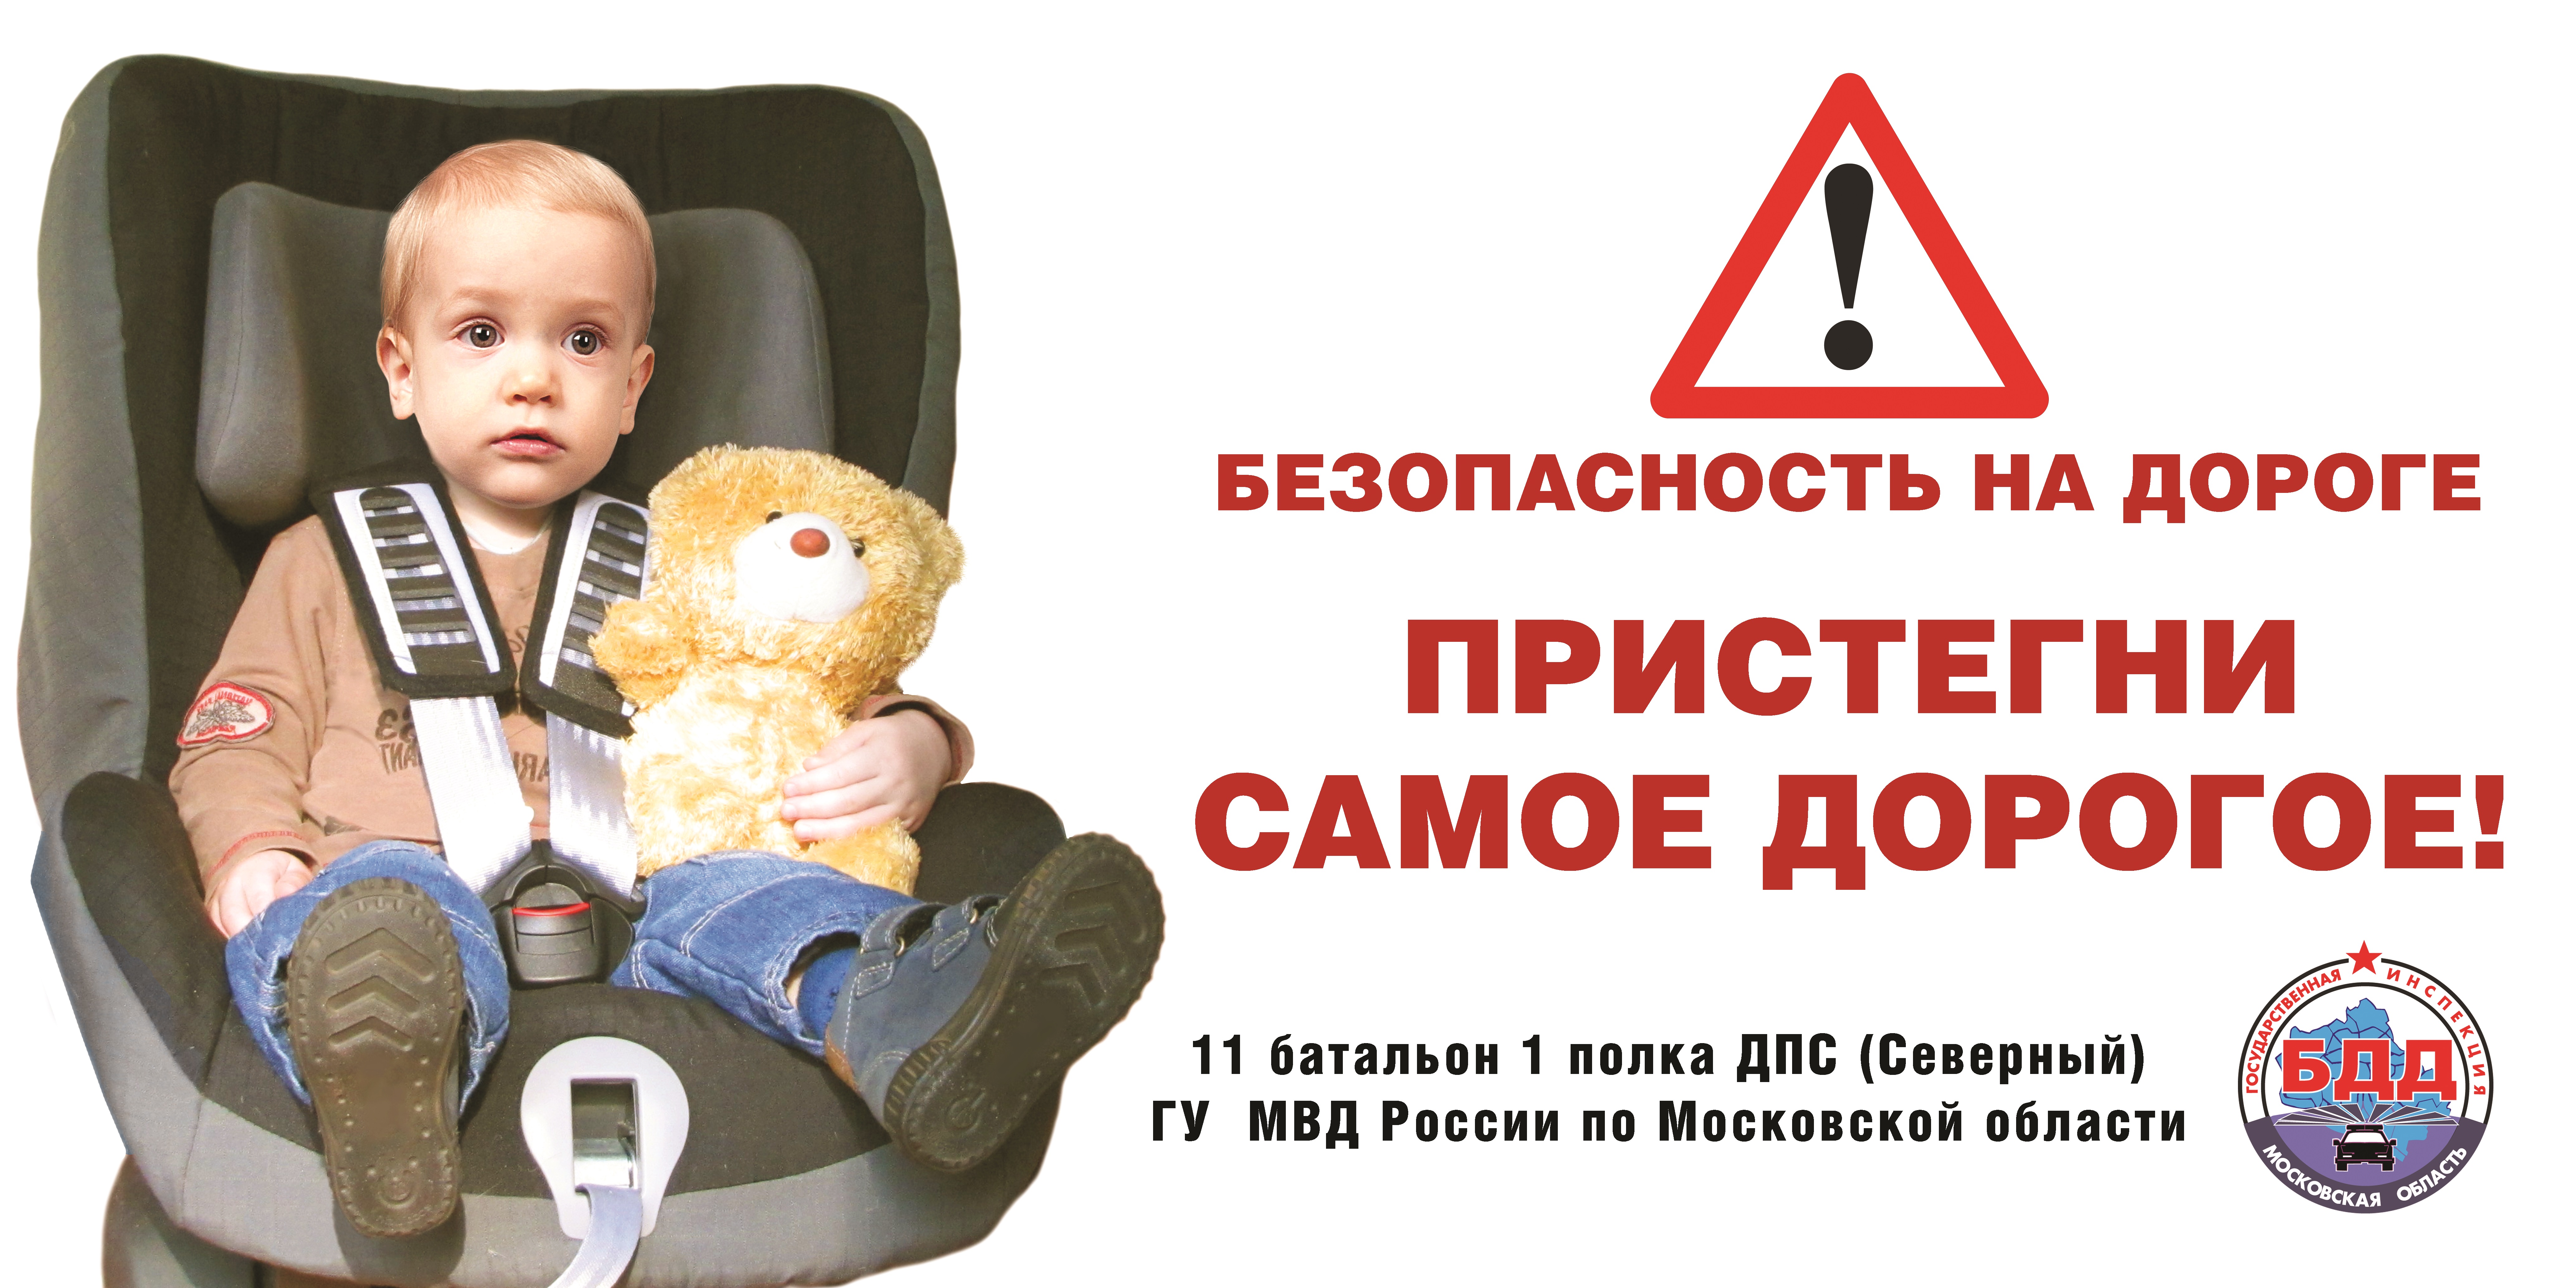 Пристегни ремни безопасности для детей